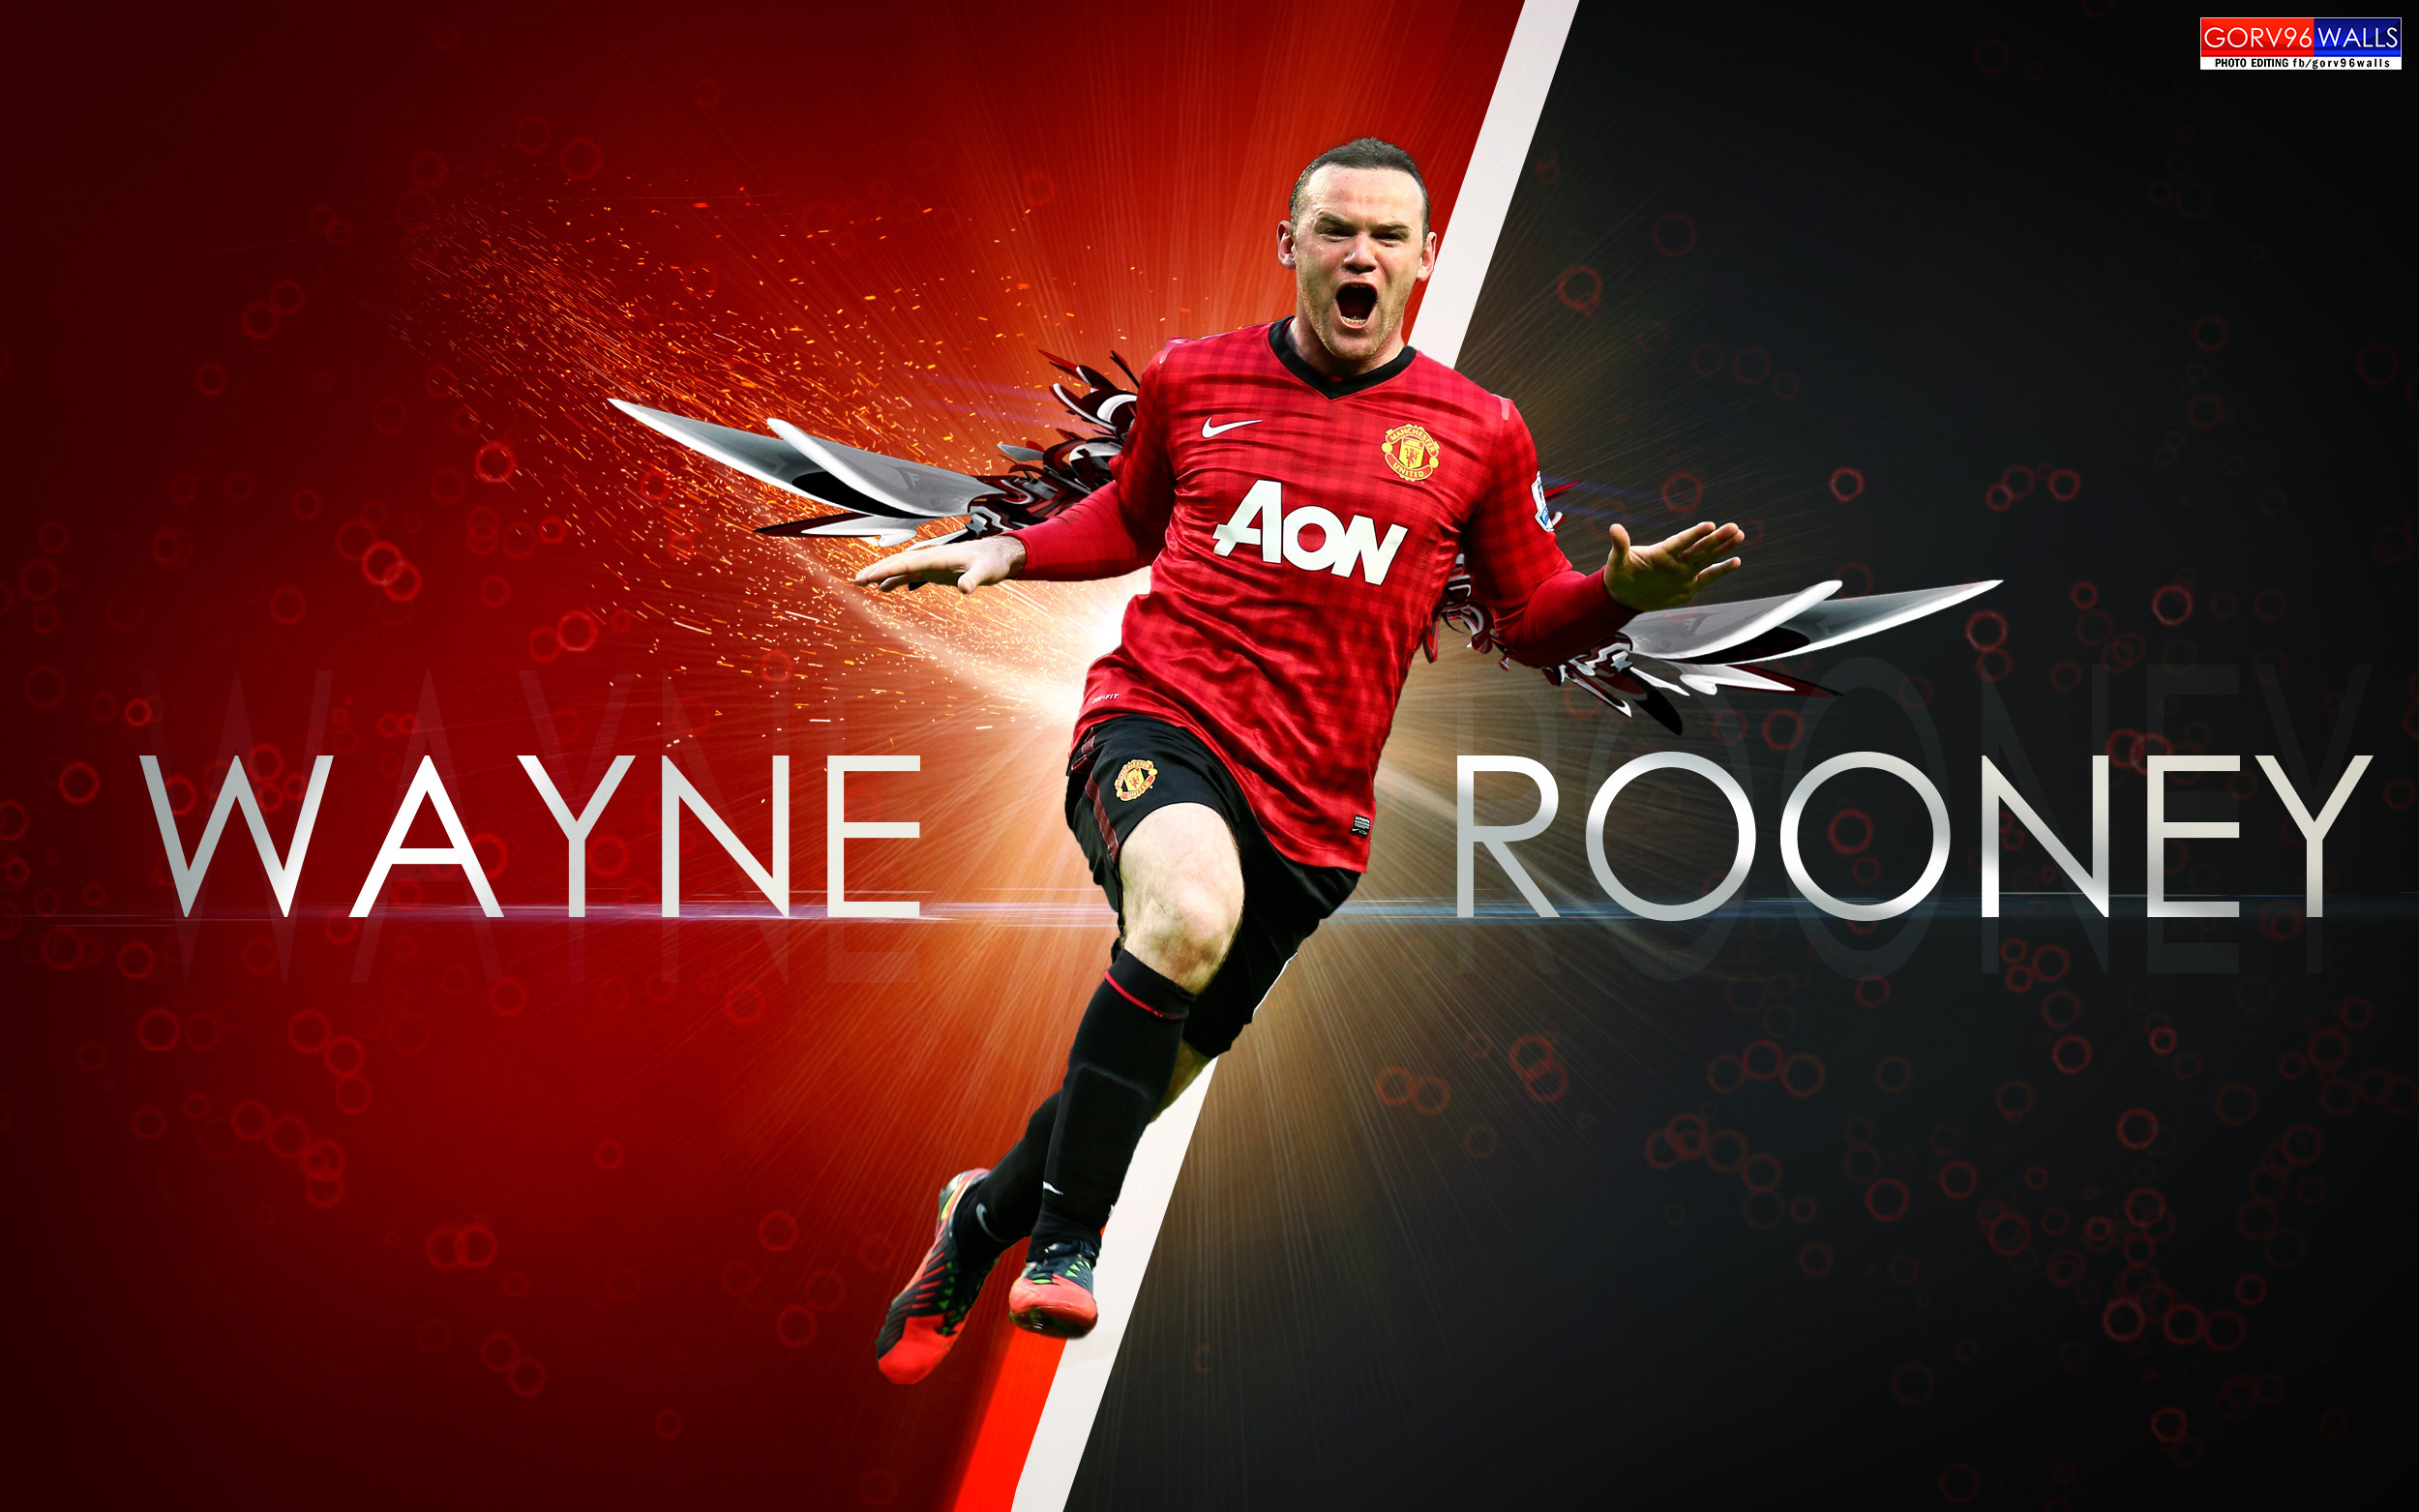 Wayne Rooney Wallpaper X